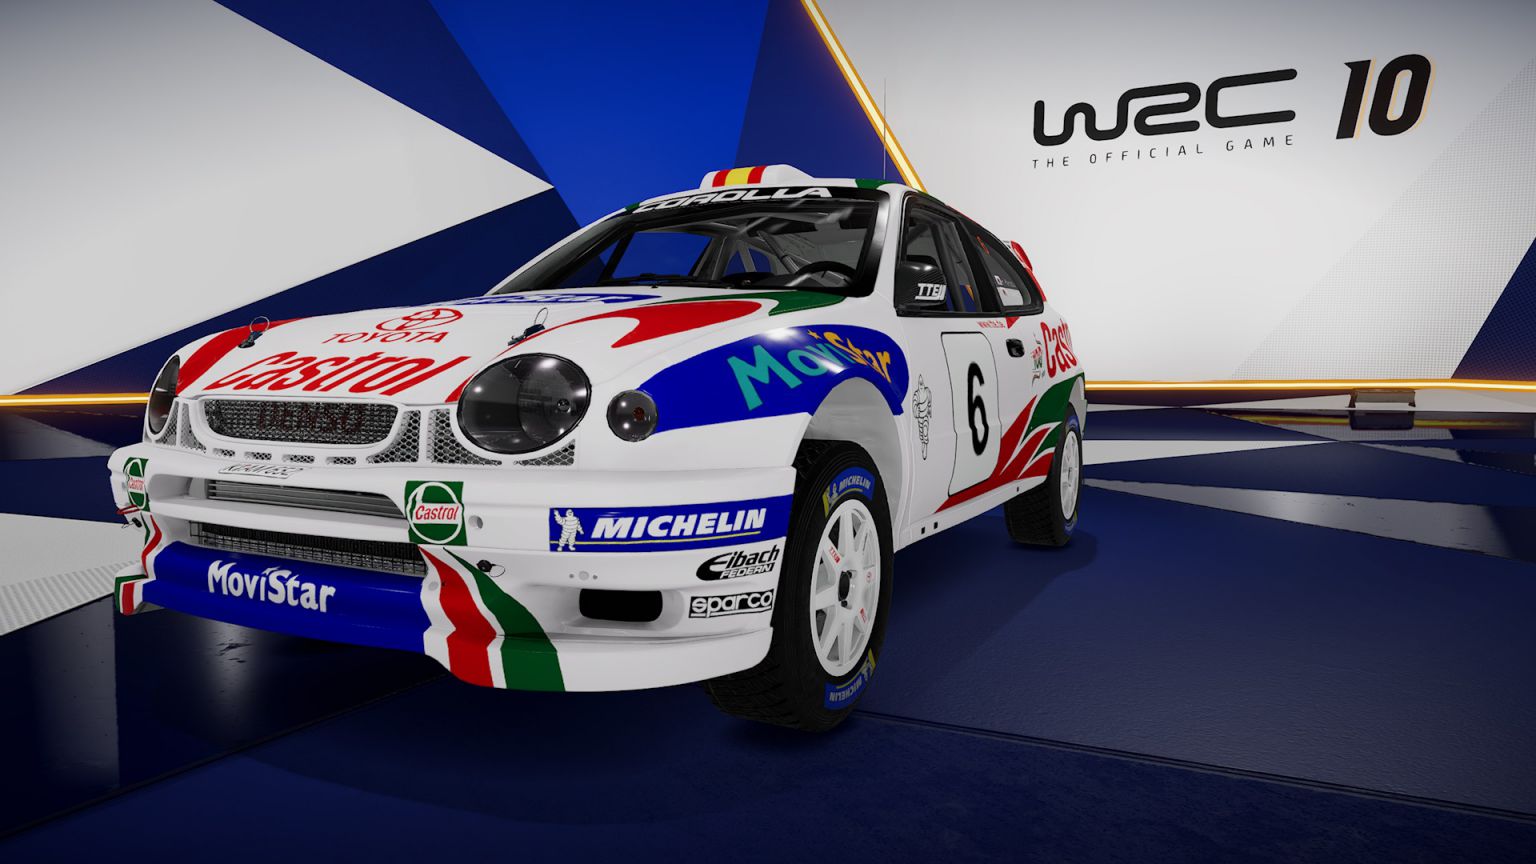 WRC 10